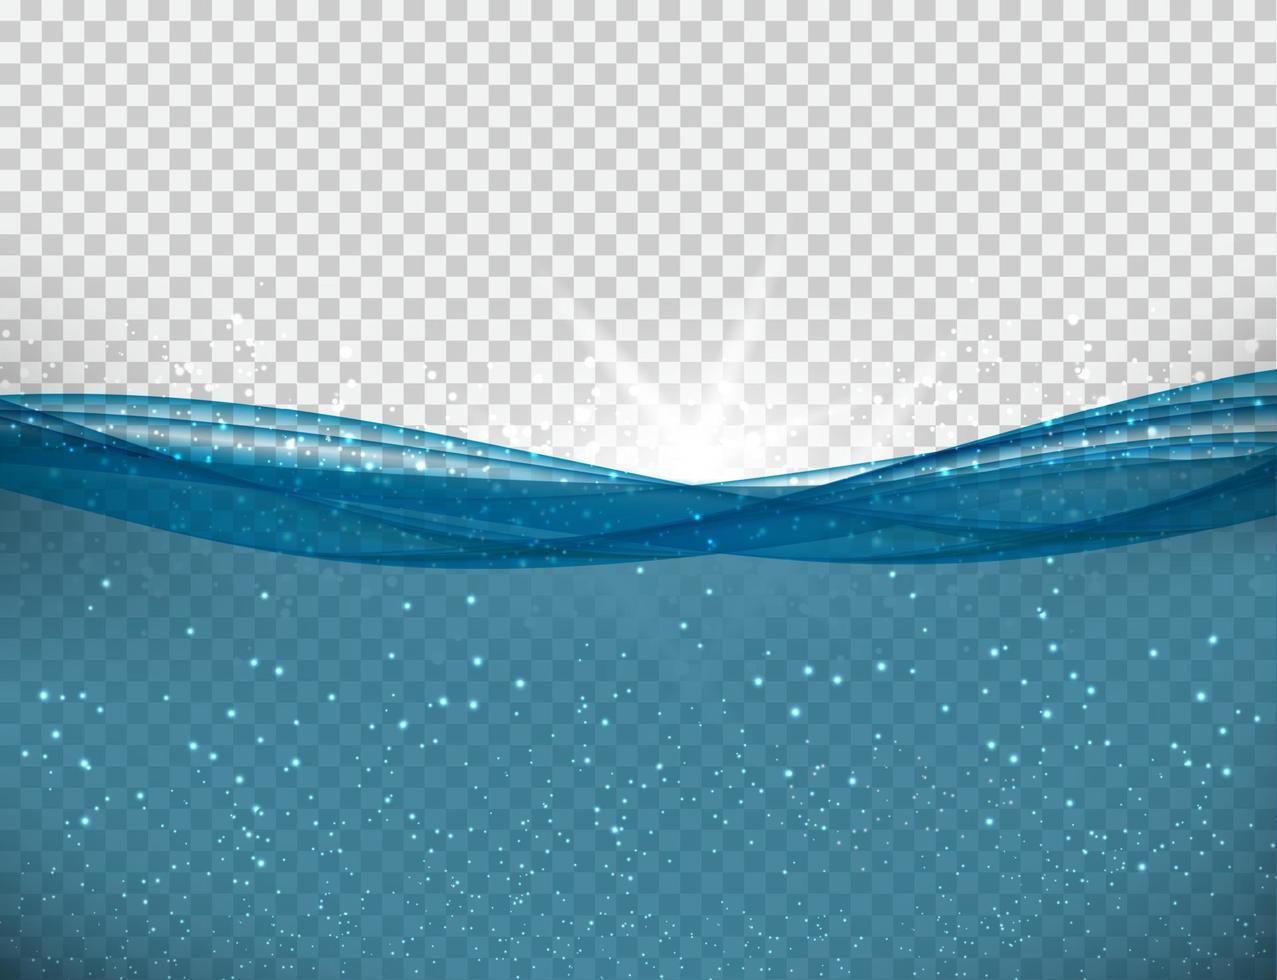 ola oceánica submarina azul abstracto vector